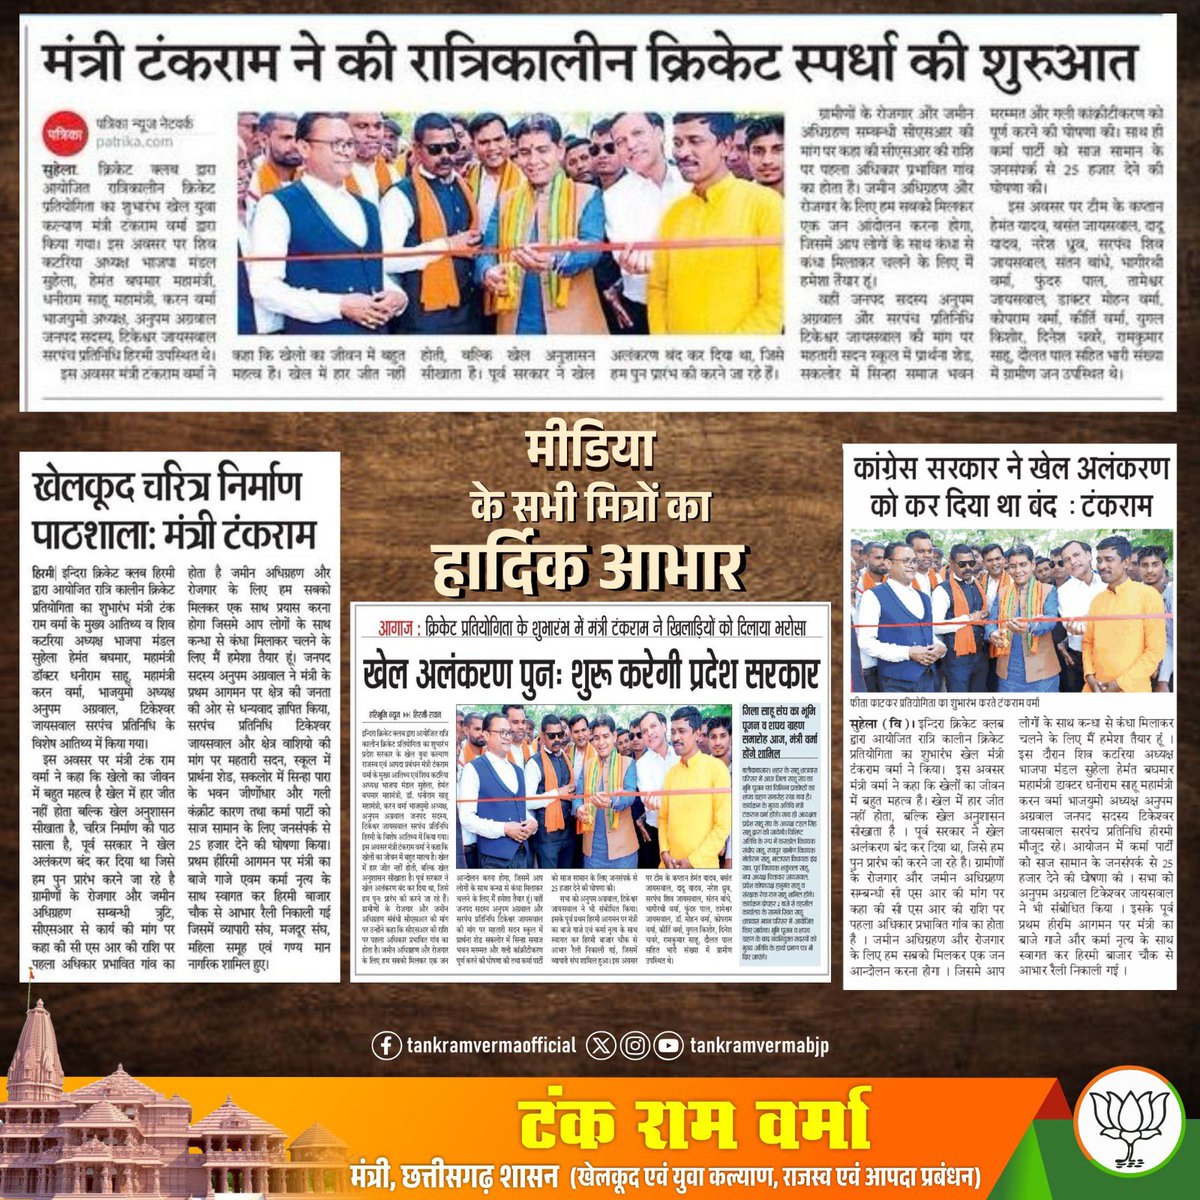 मीडिया के सभी मित्रों का हार्दिक आभार 🙏🏻🌸

#MediaSpeak #मीडिया_स्पीक 
#raipur #newspaper #raipurnews #tildanewra